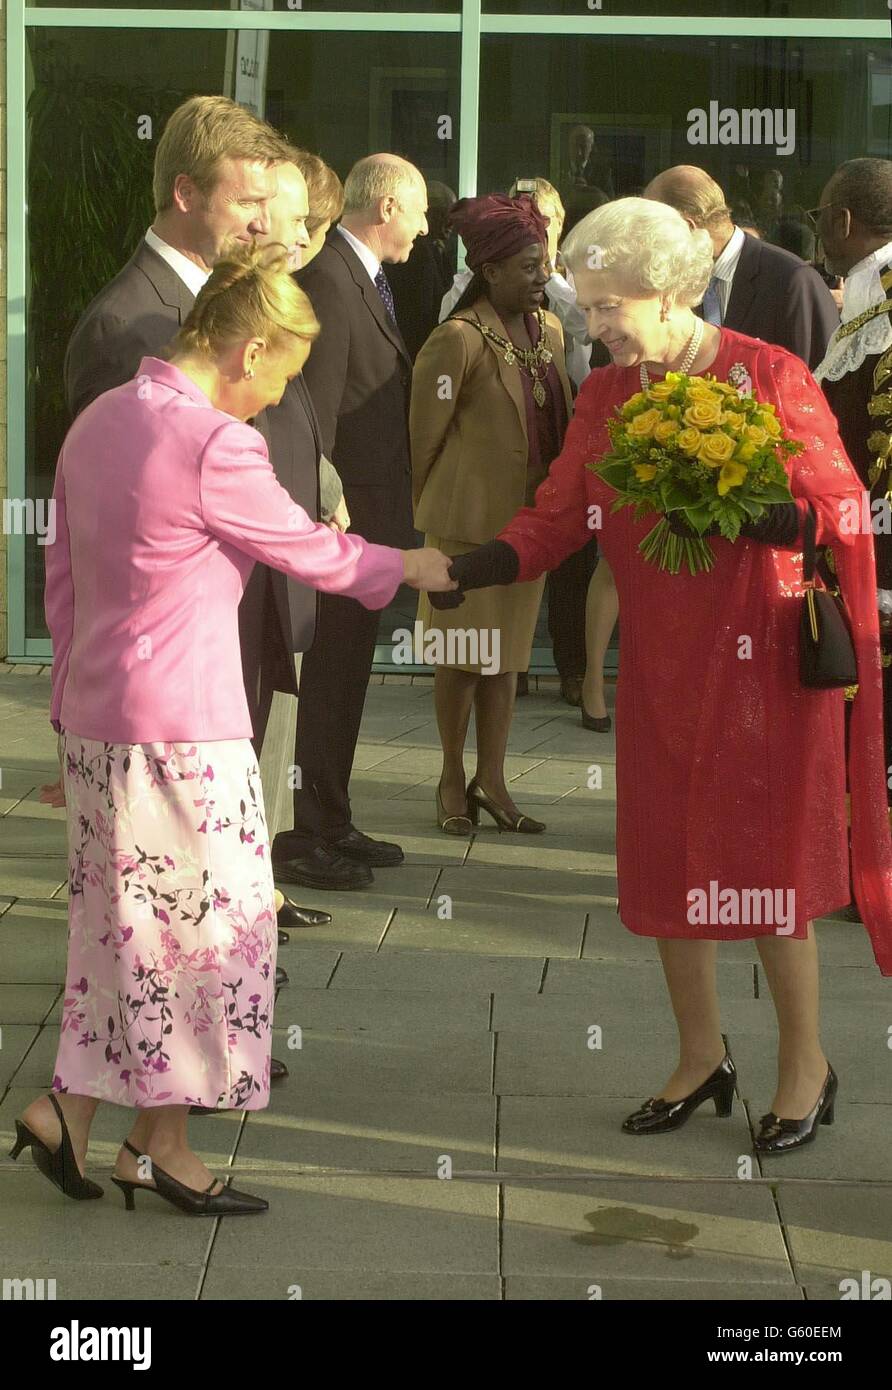 Königin Elizabeth II schüttelt sich die Hände mit Jayne Torvill, während sie neben ihrem Eistanz-Partner Christopher Dean steht, außerhalb des neuen Nottingham Ice Centre, wo die Königin und der Herzog von Edinburgh im Rahmen ihrer Golden Jubilee Tour an diesem Abend besuchten. Stockfoto